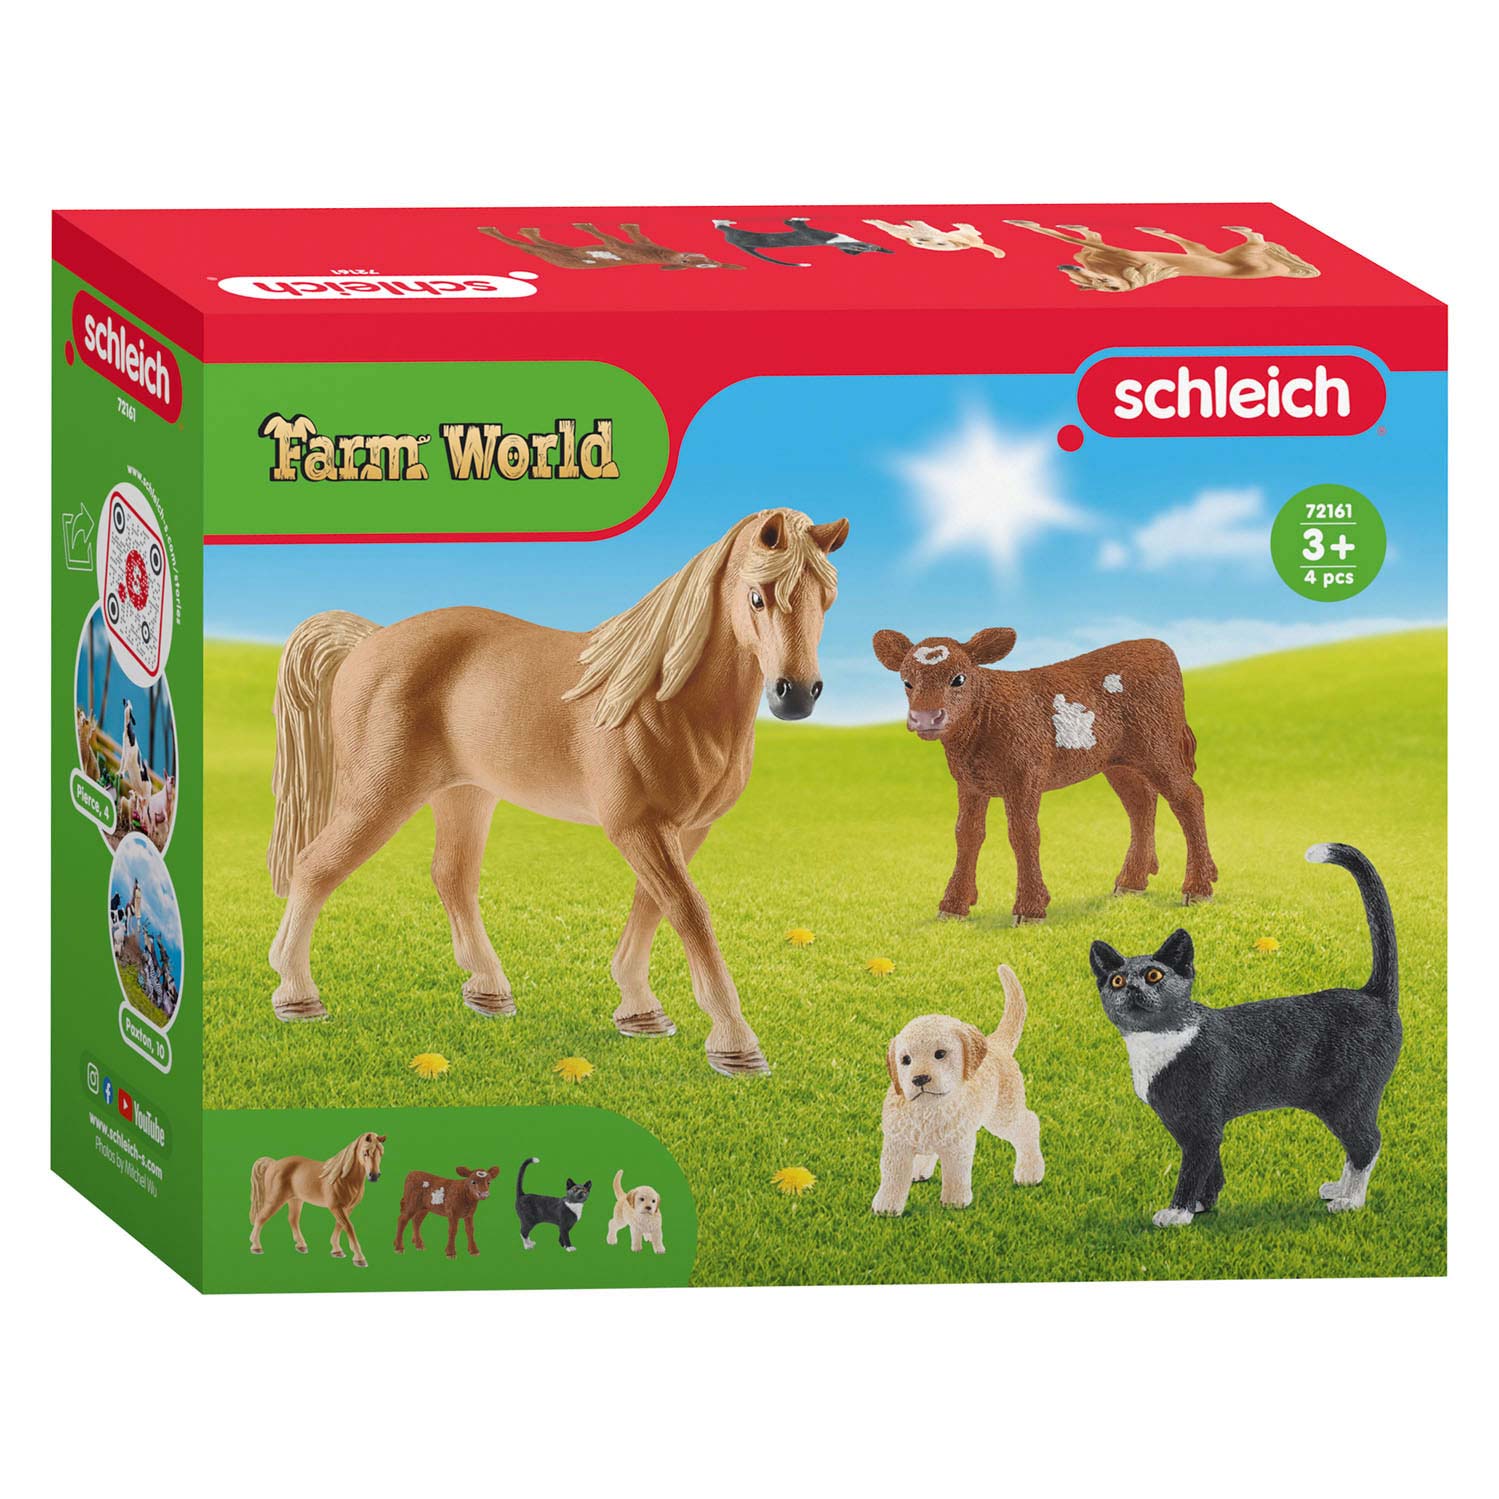 Schleich FARM WORLD Starterset 72161